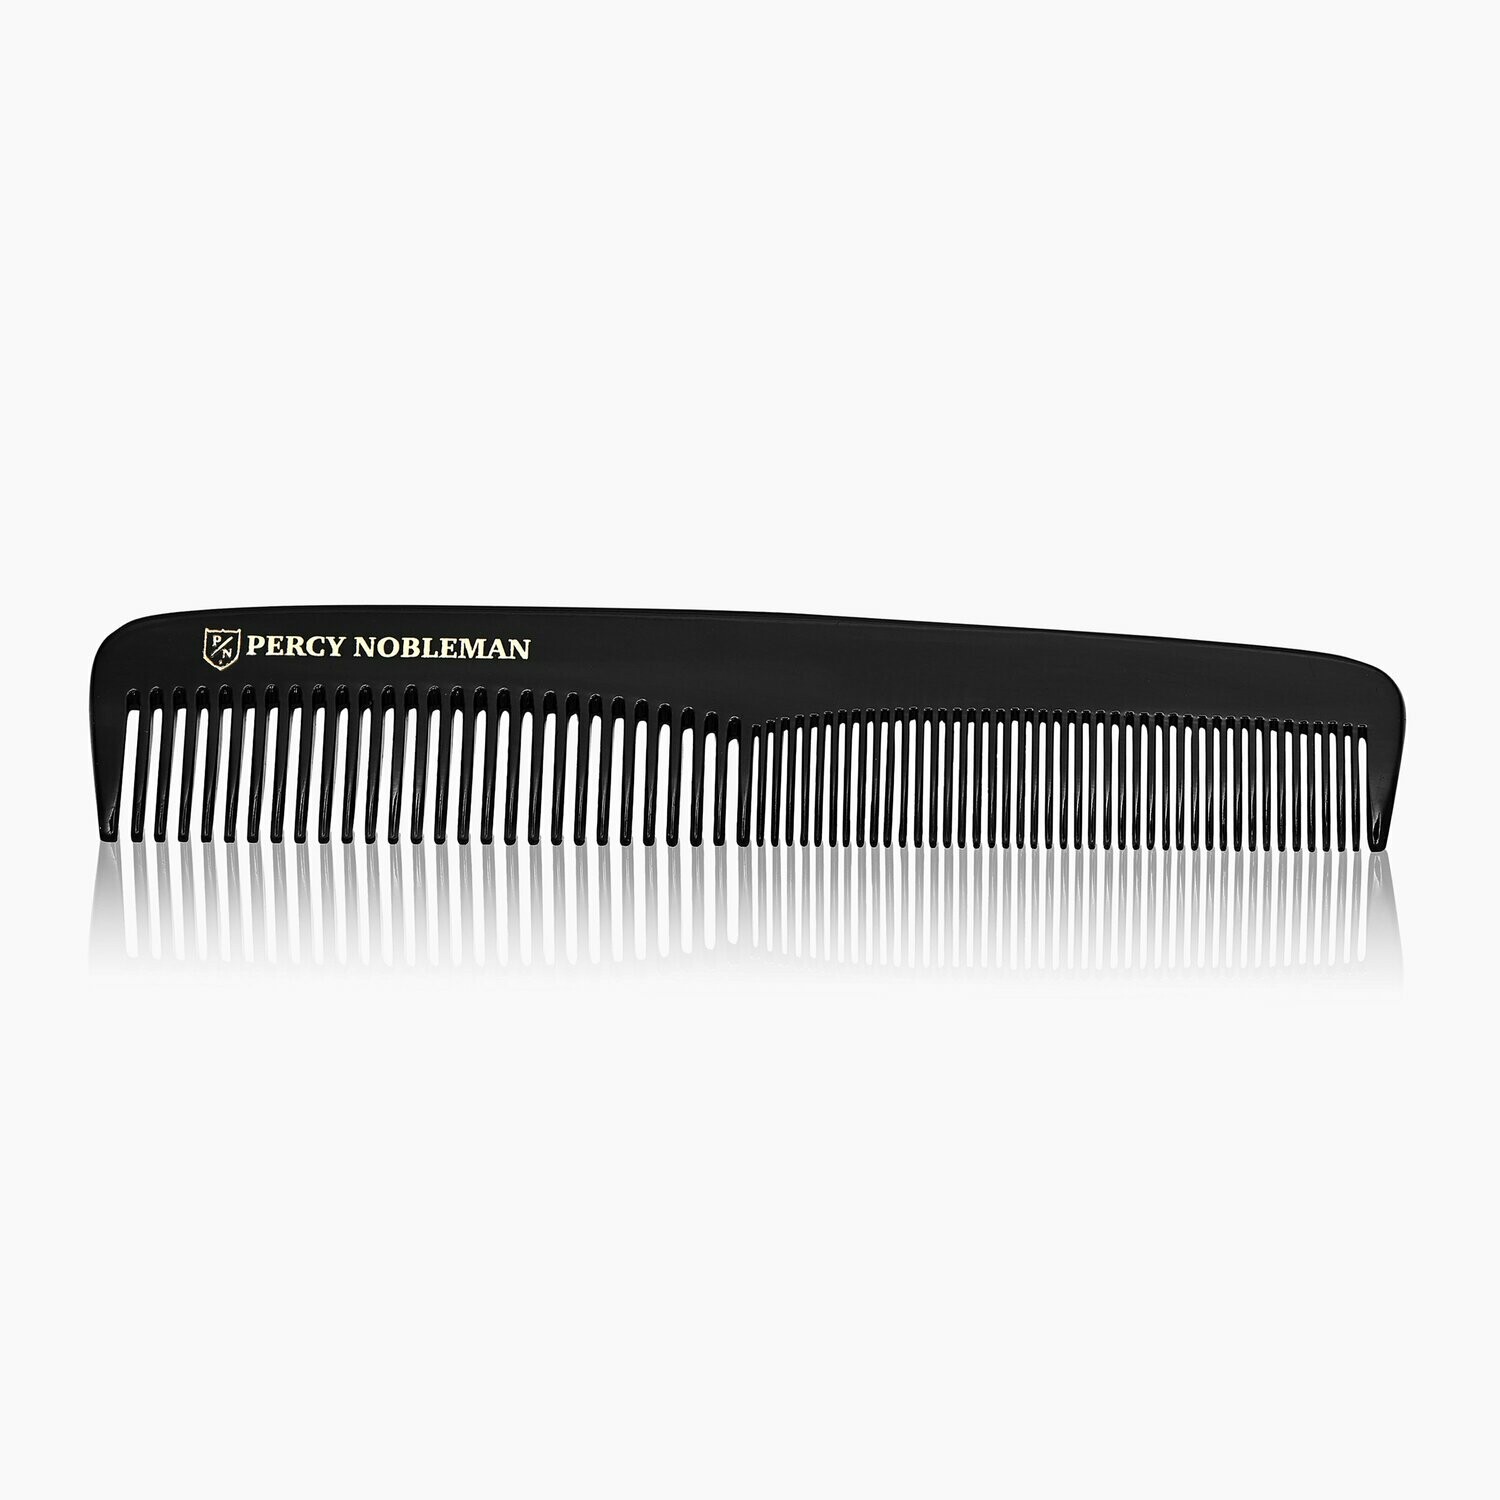 Percy Nobleman Hair Comb - Расческа для волос